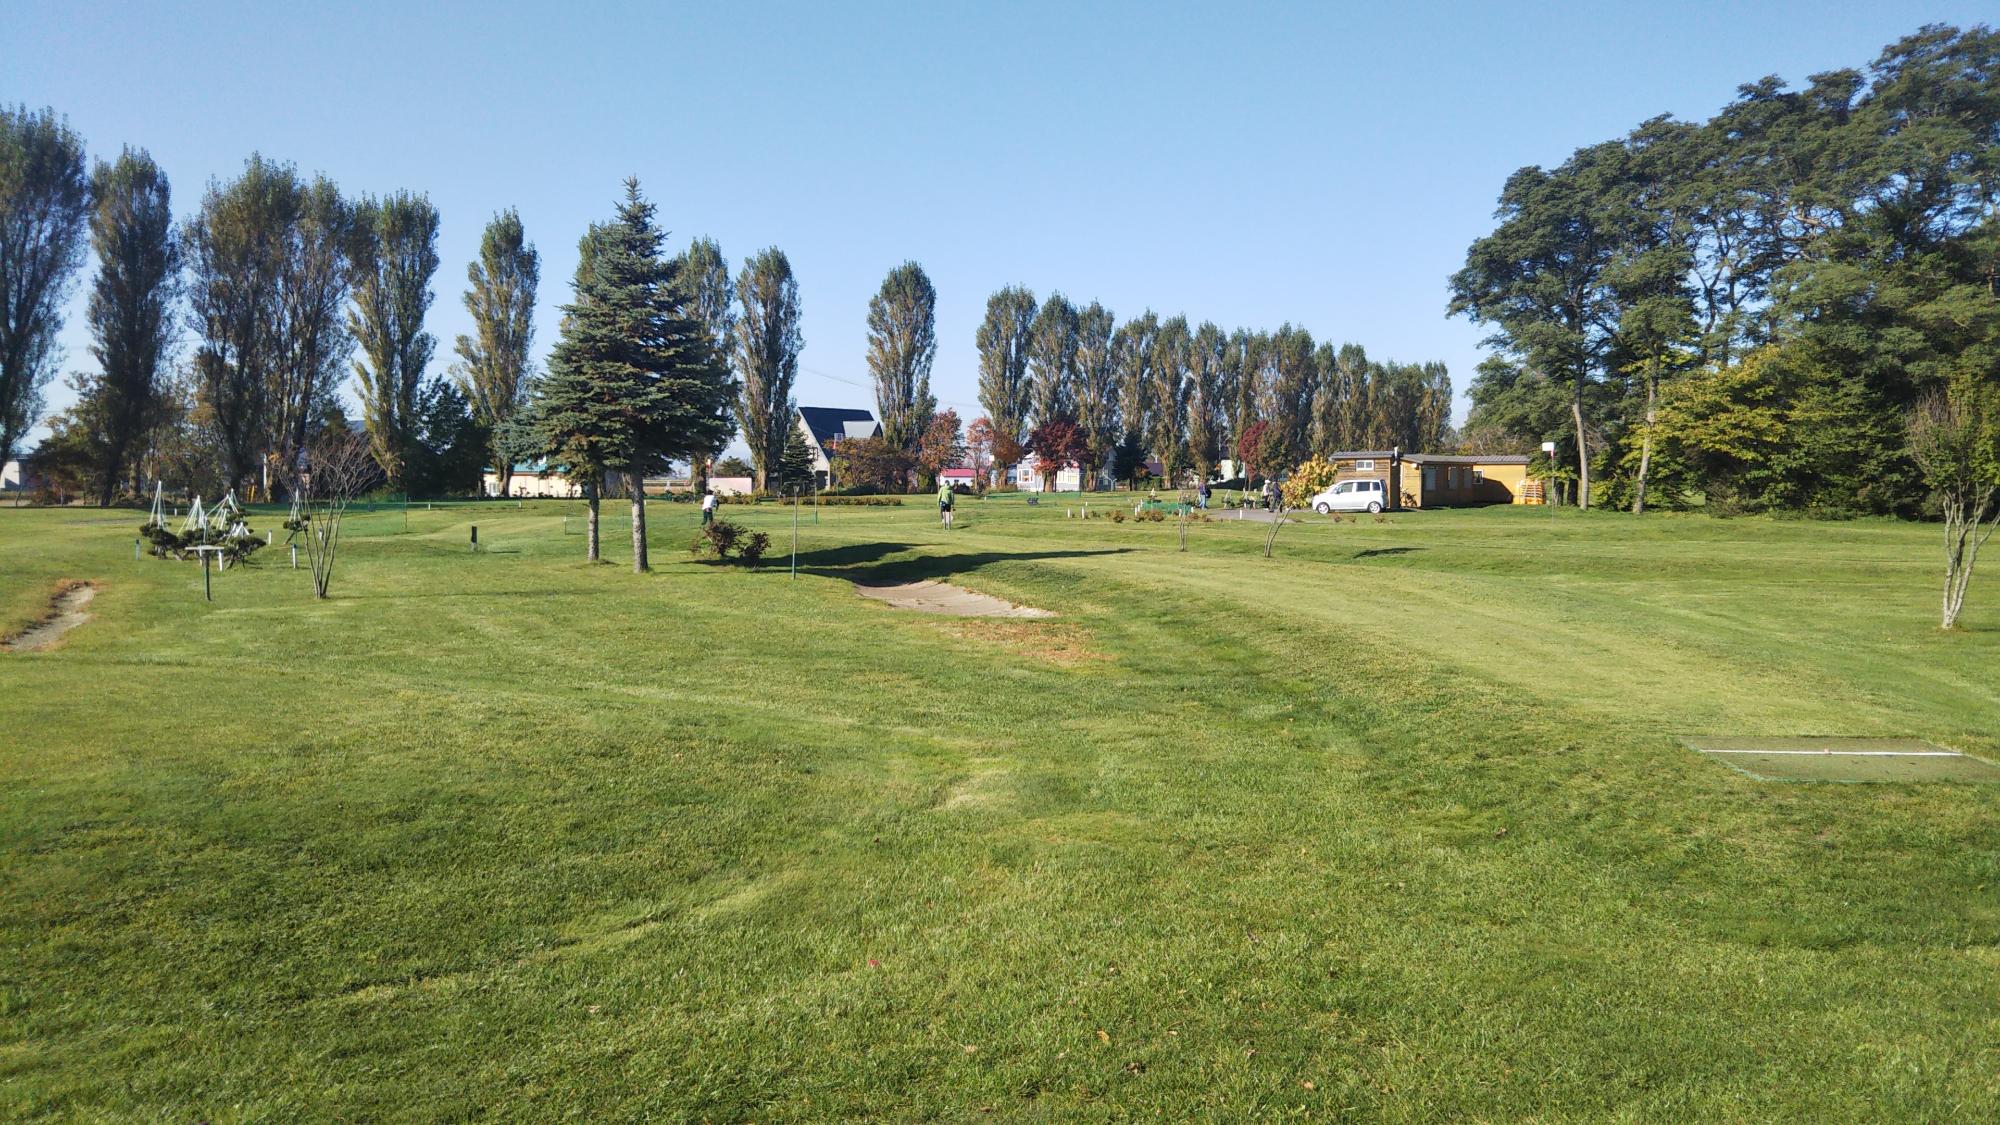 整備された芝生が一面に広がる幾春別川リバーパークパークゴルフ場の写真